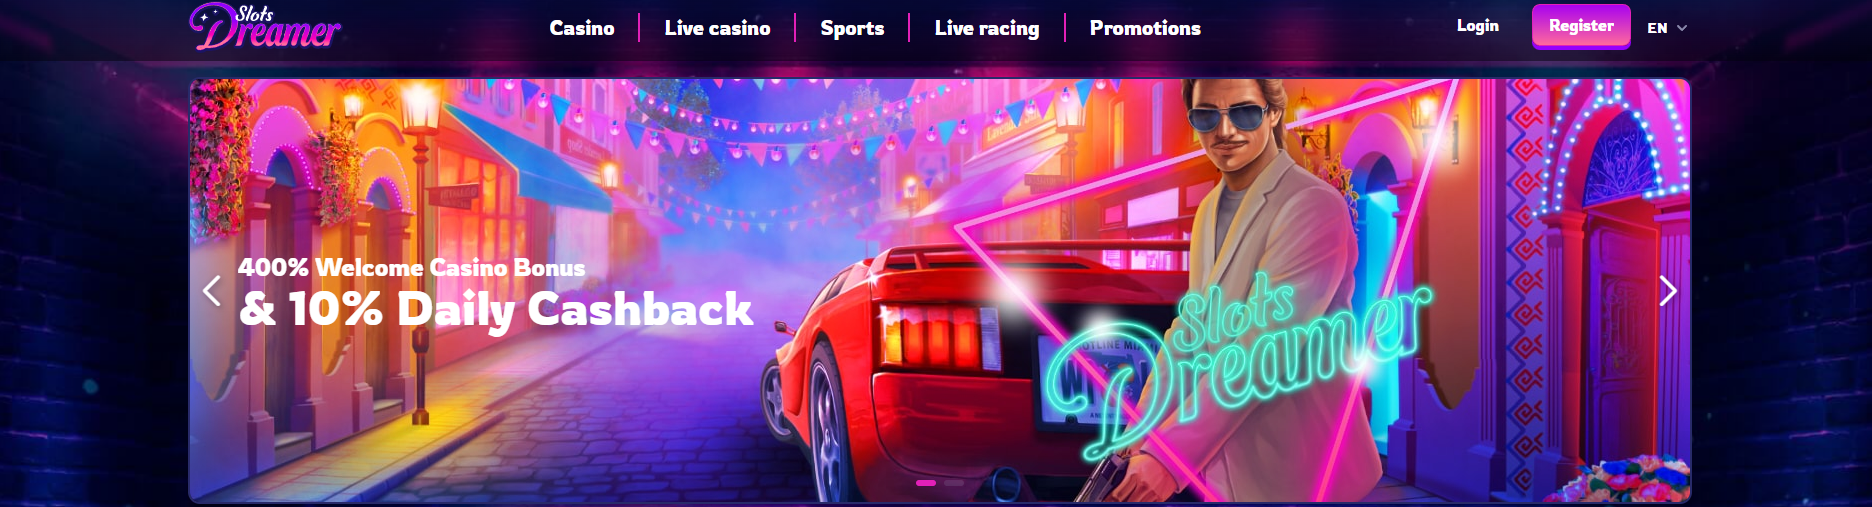 Slots Dreamer Homepage